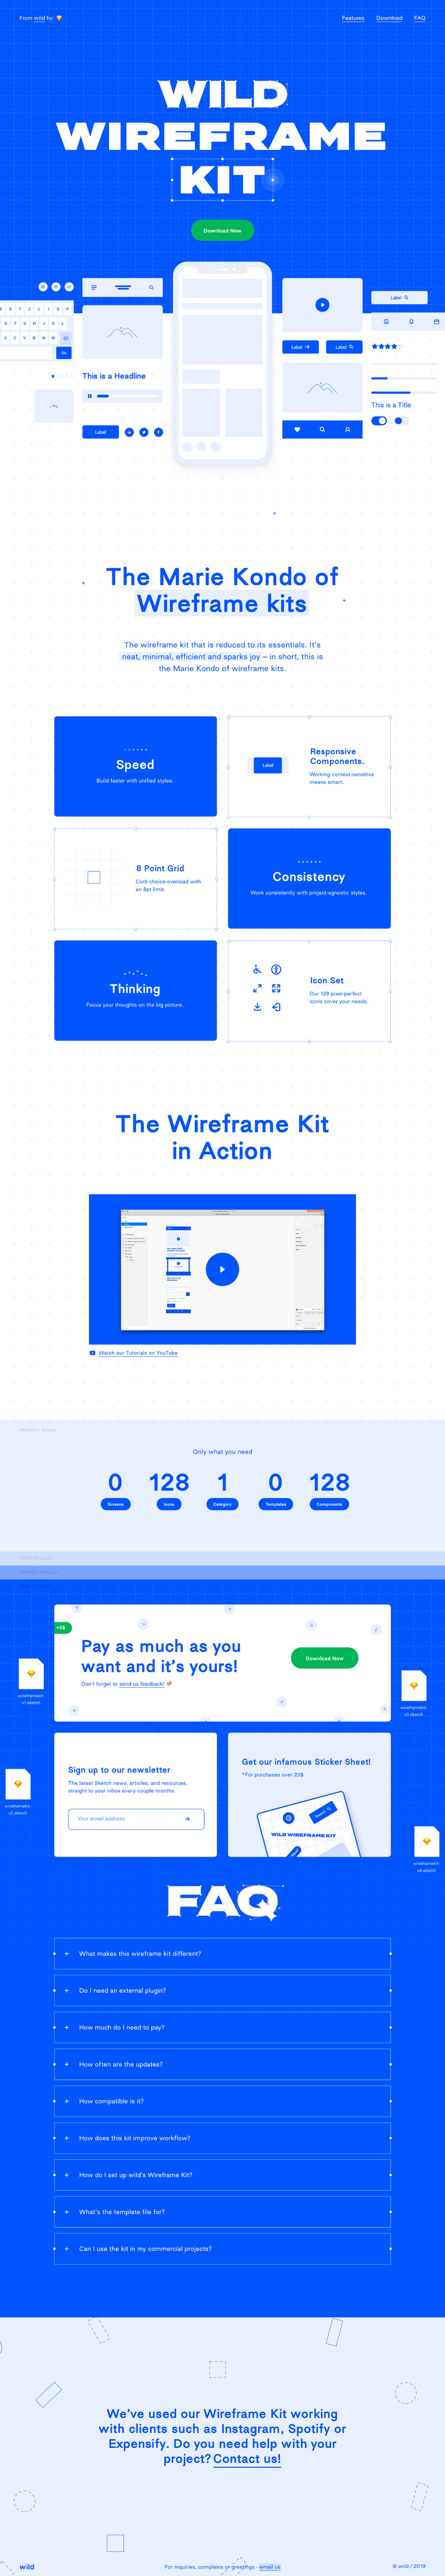 Wild Wireframe Kit